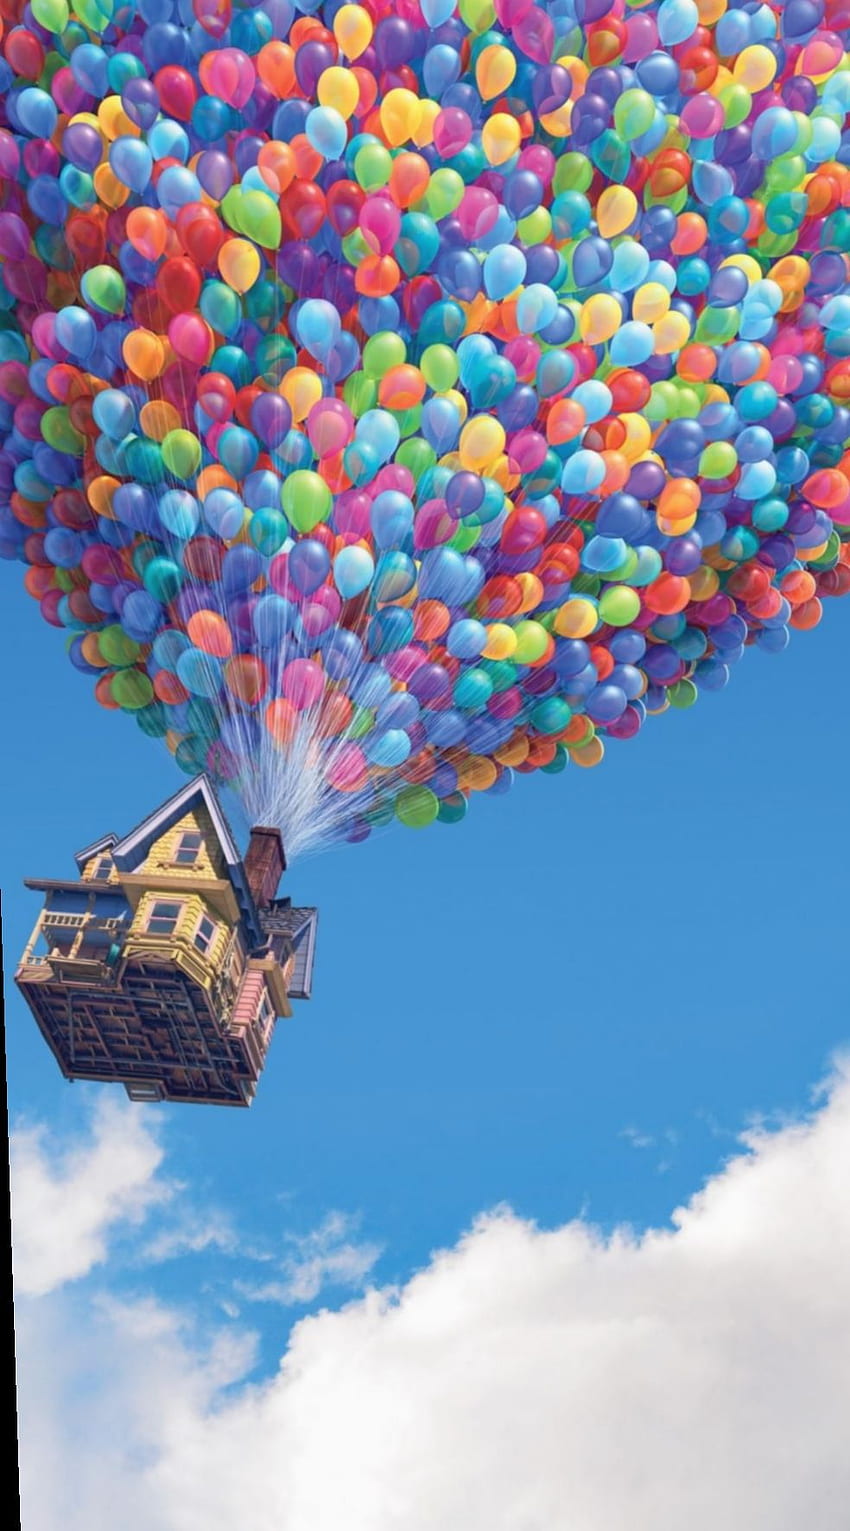 Pixar up HD wallpapers | Pxfuel